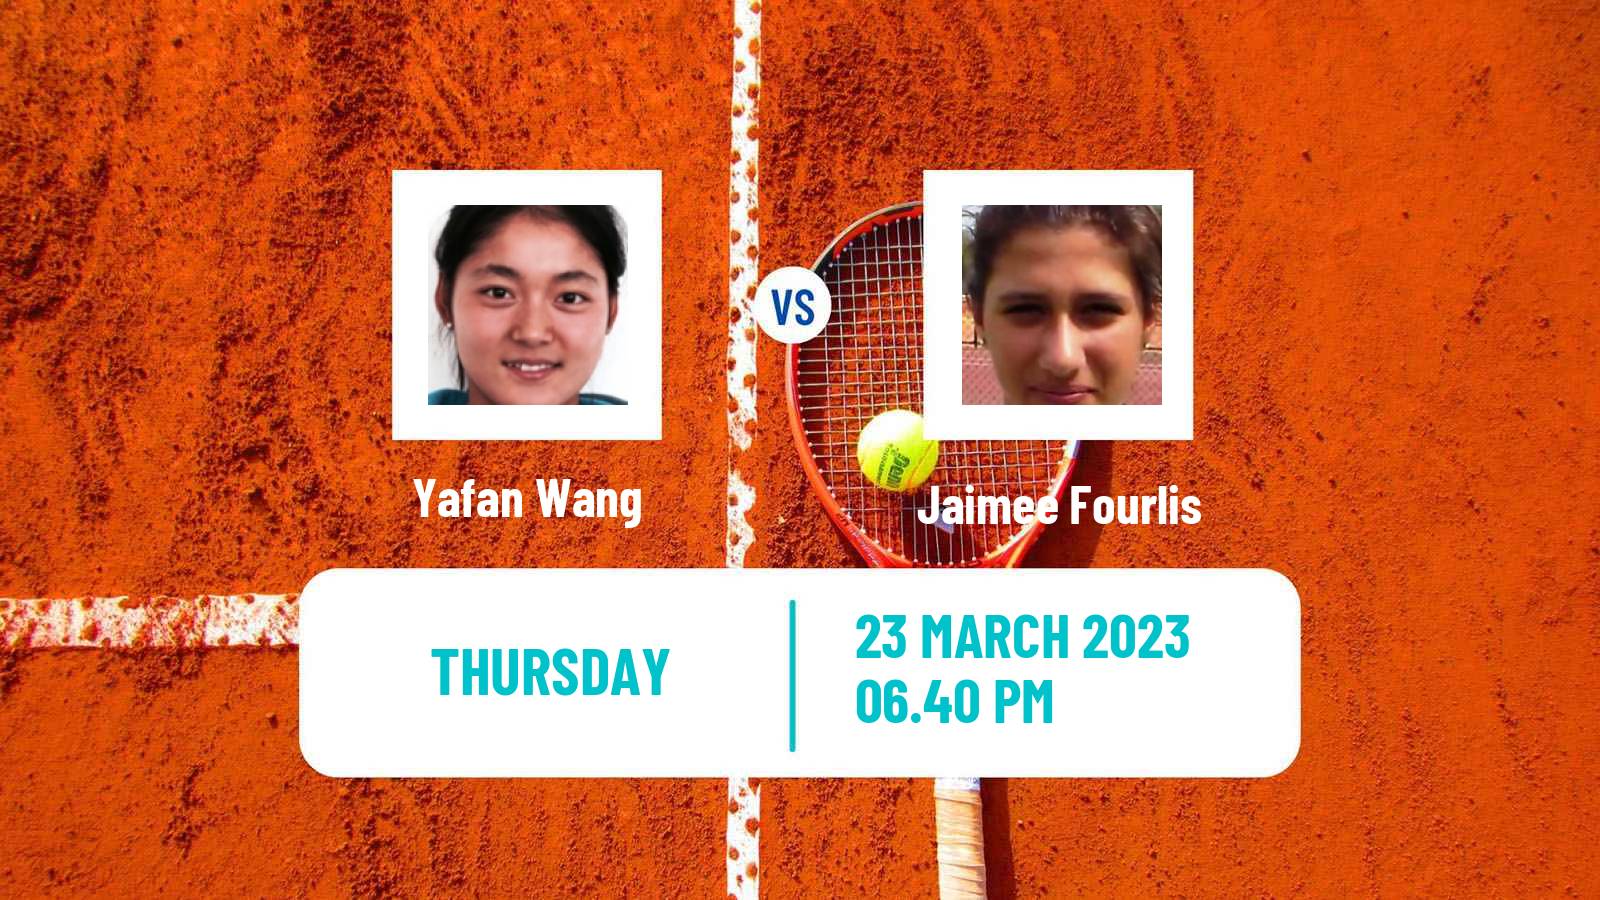 Tennis ITF Tournaments Yafan Wang - Jaimee Fourlis